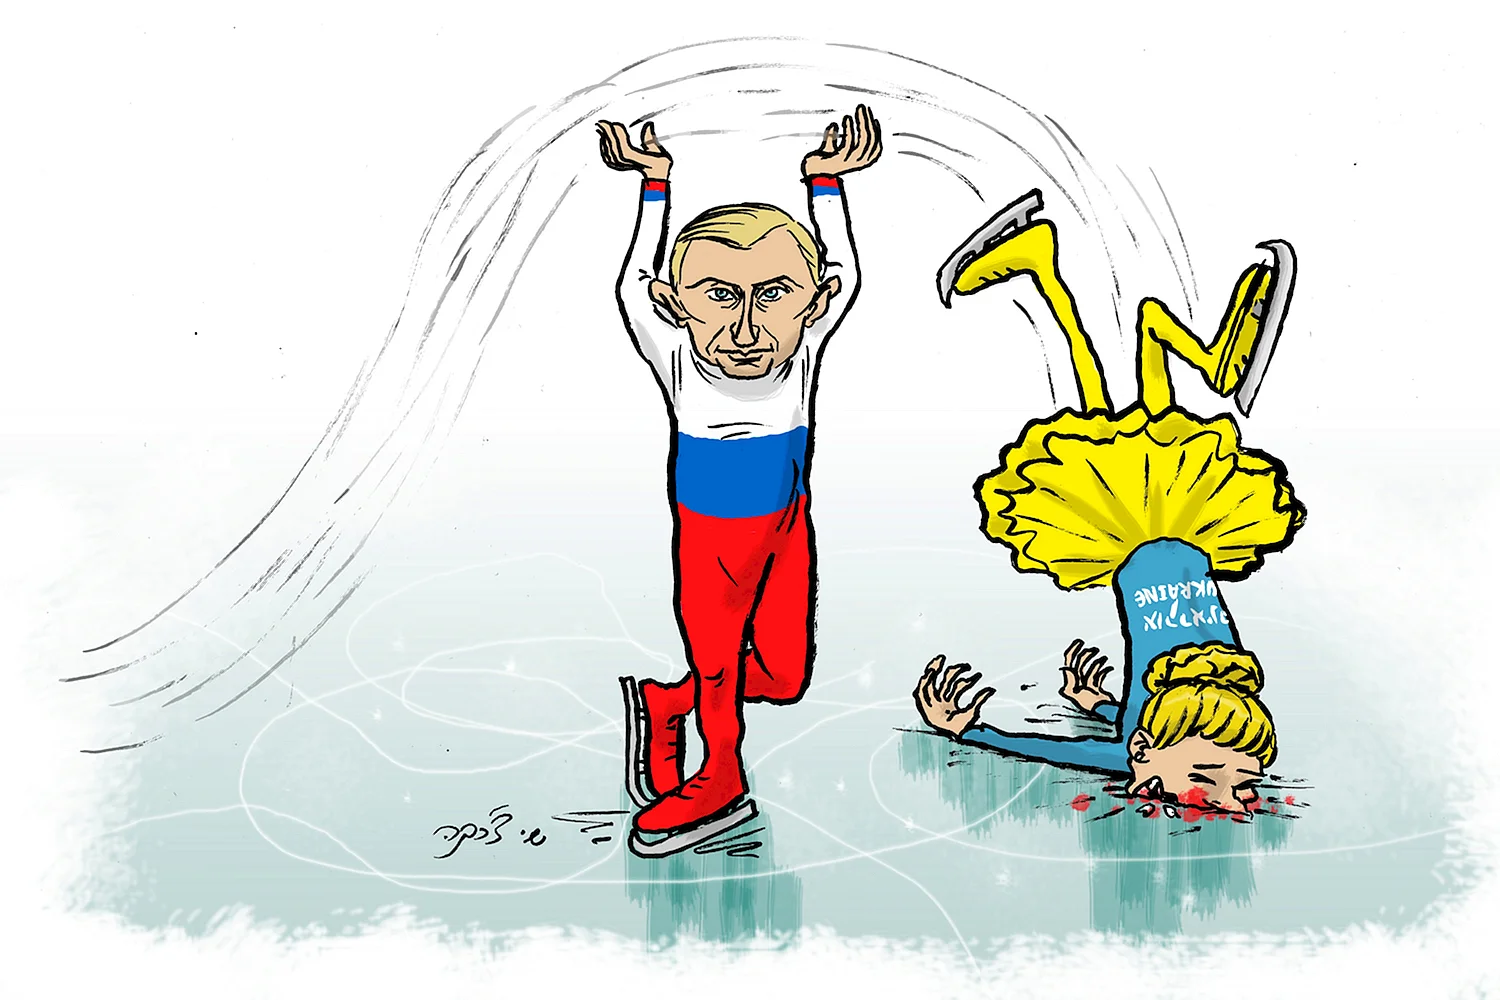 Украинские карикатуры